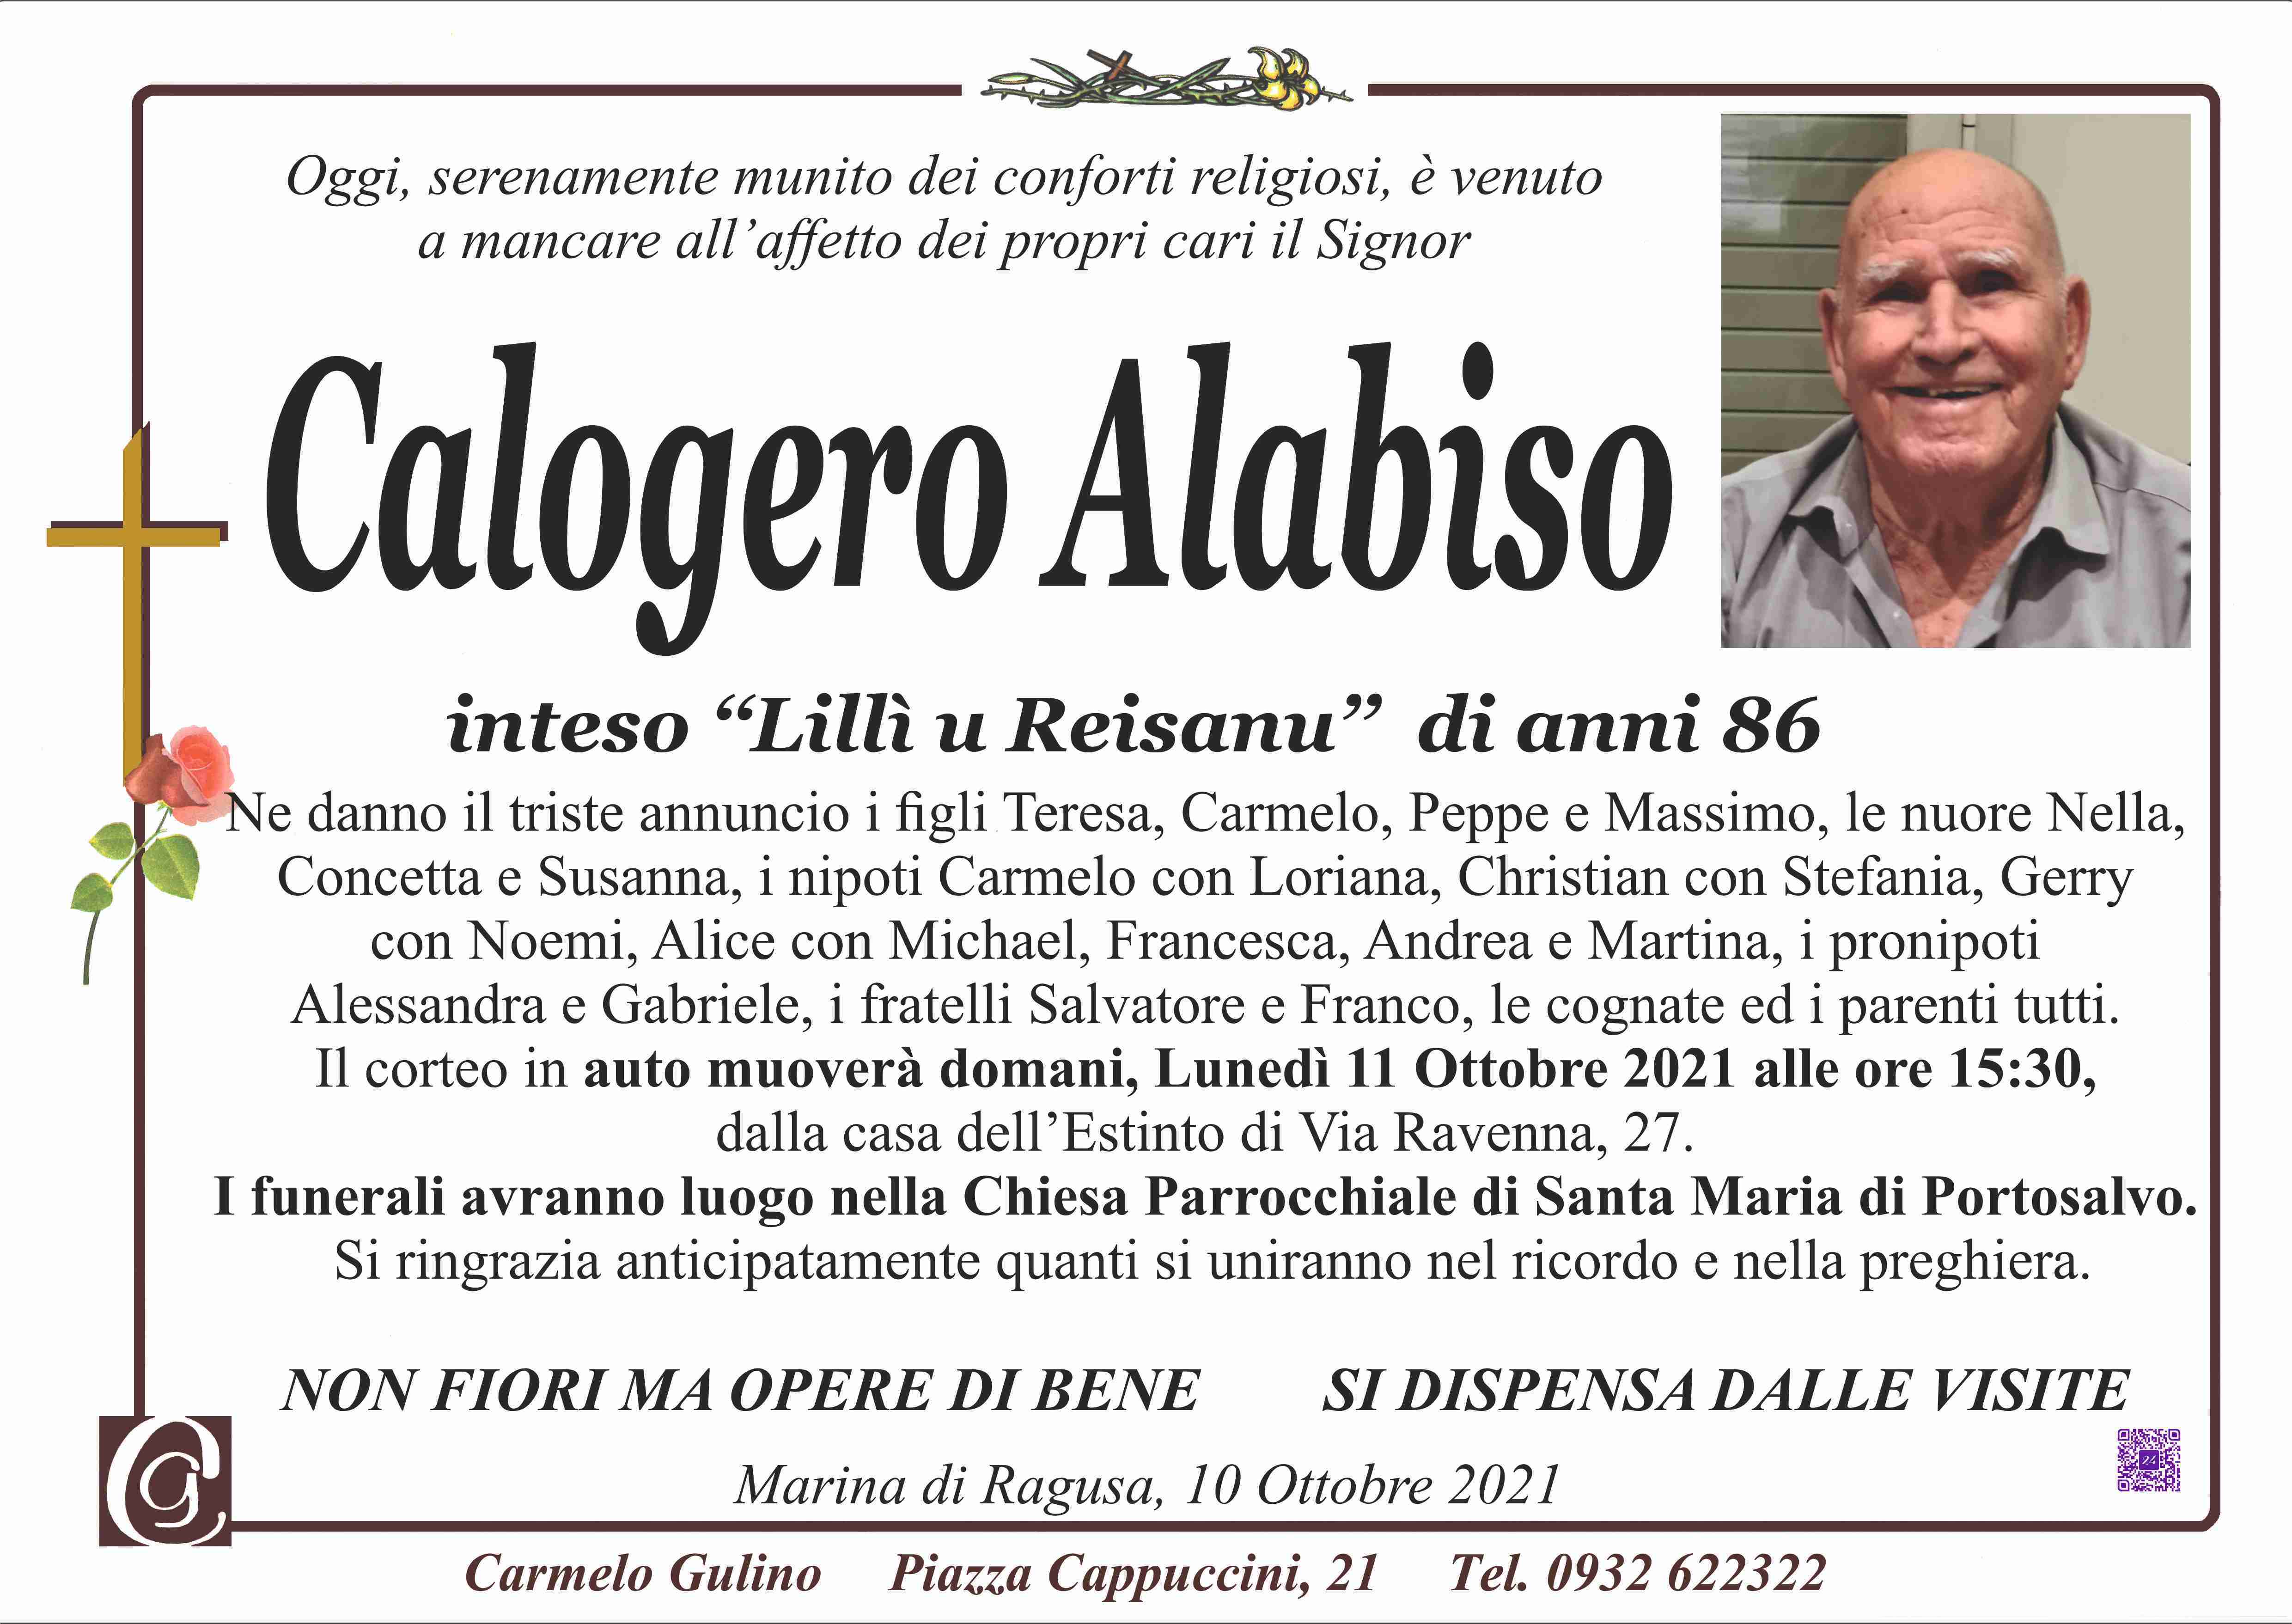 Calogero Alabiso